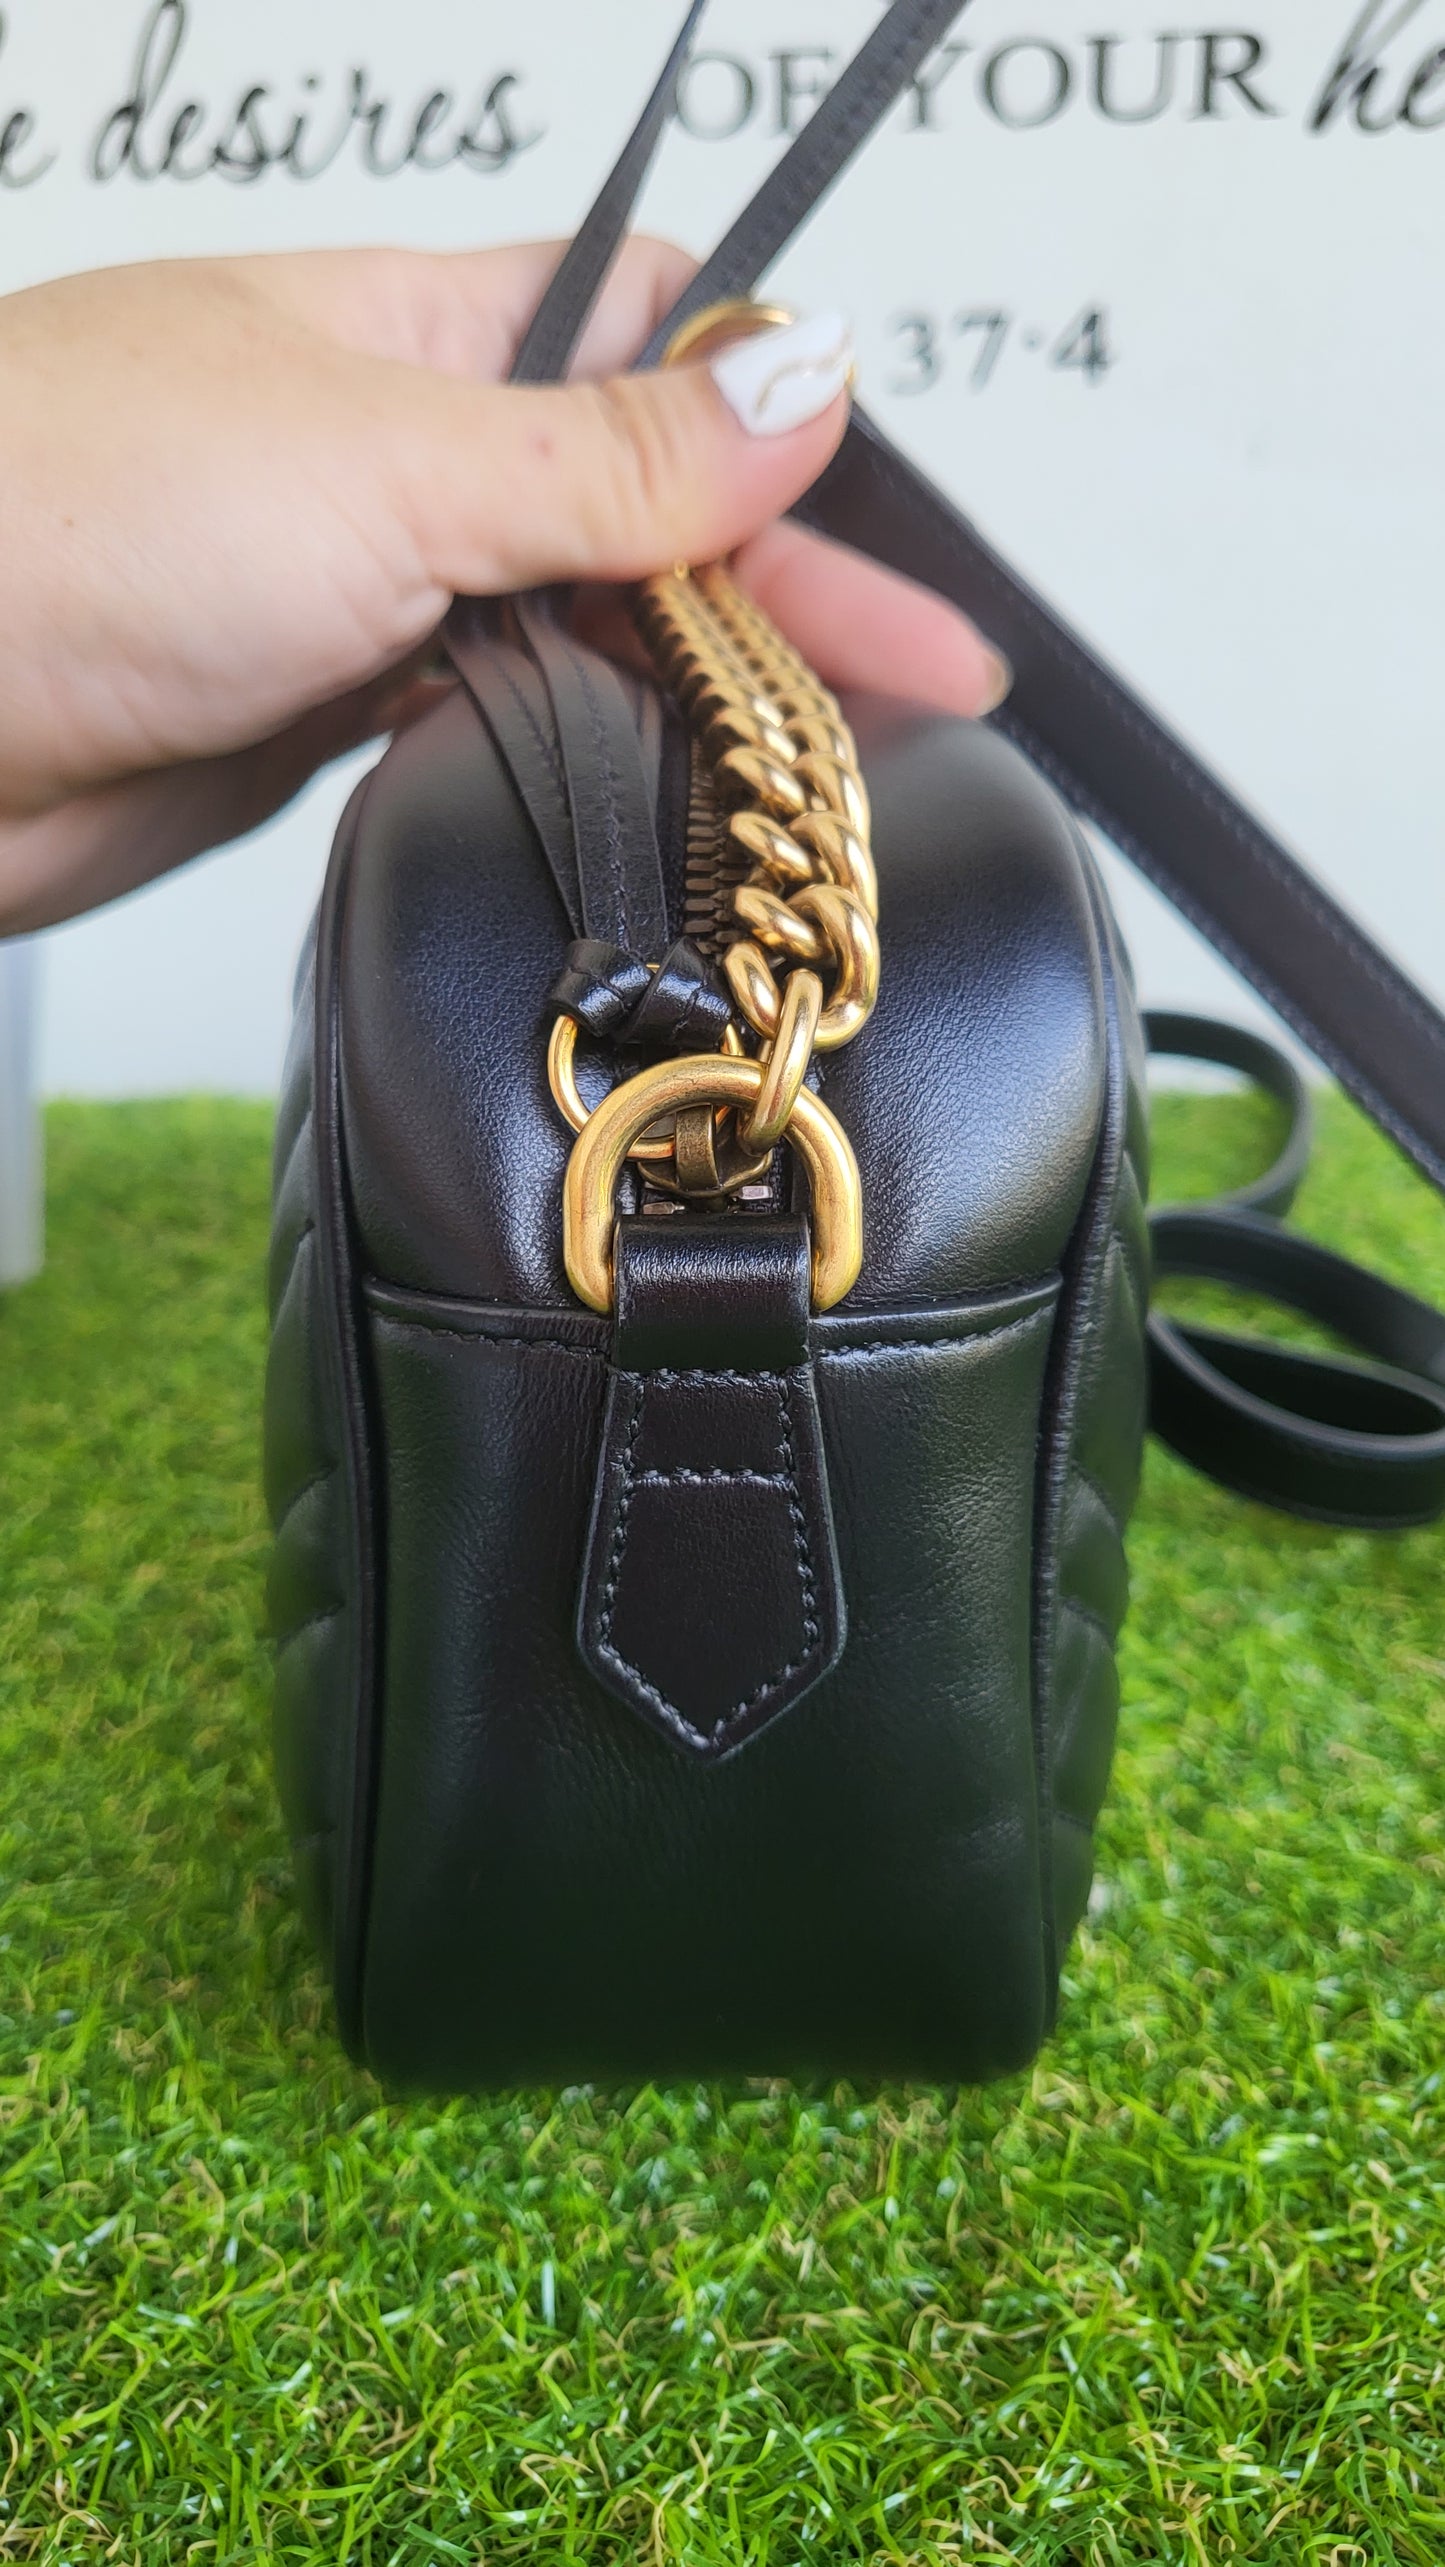 Gucci Marmont Camera Bag